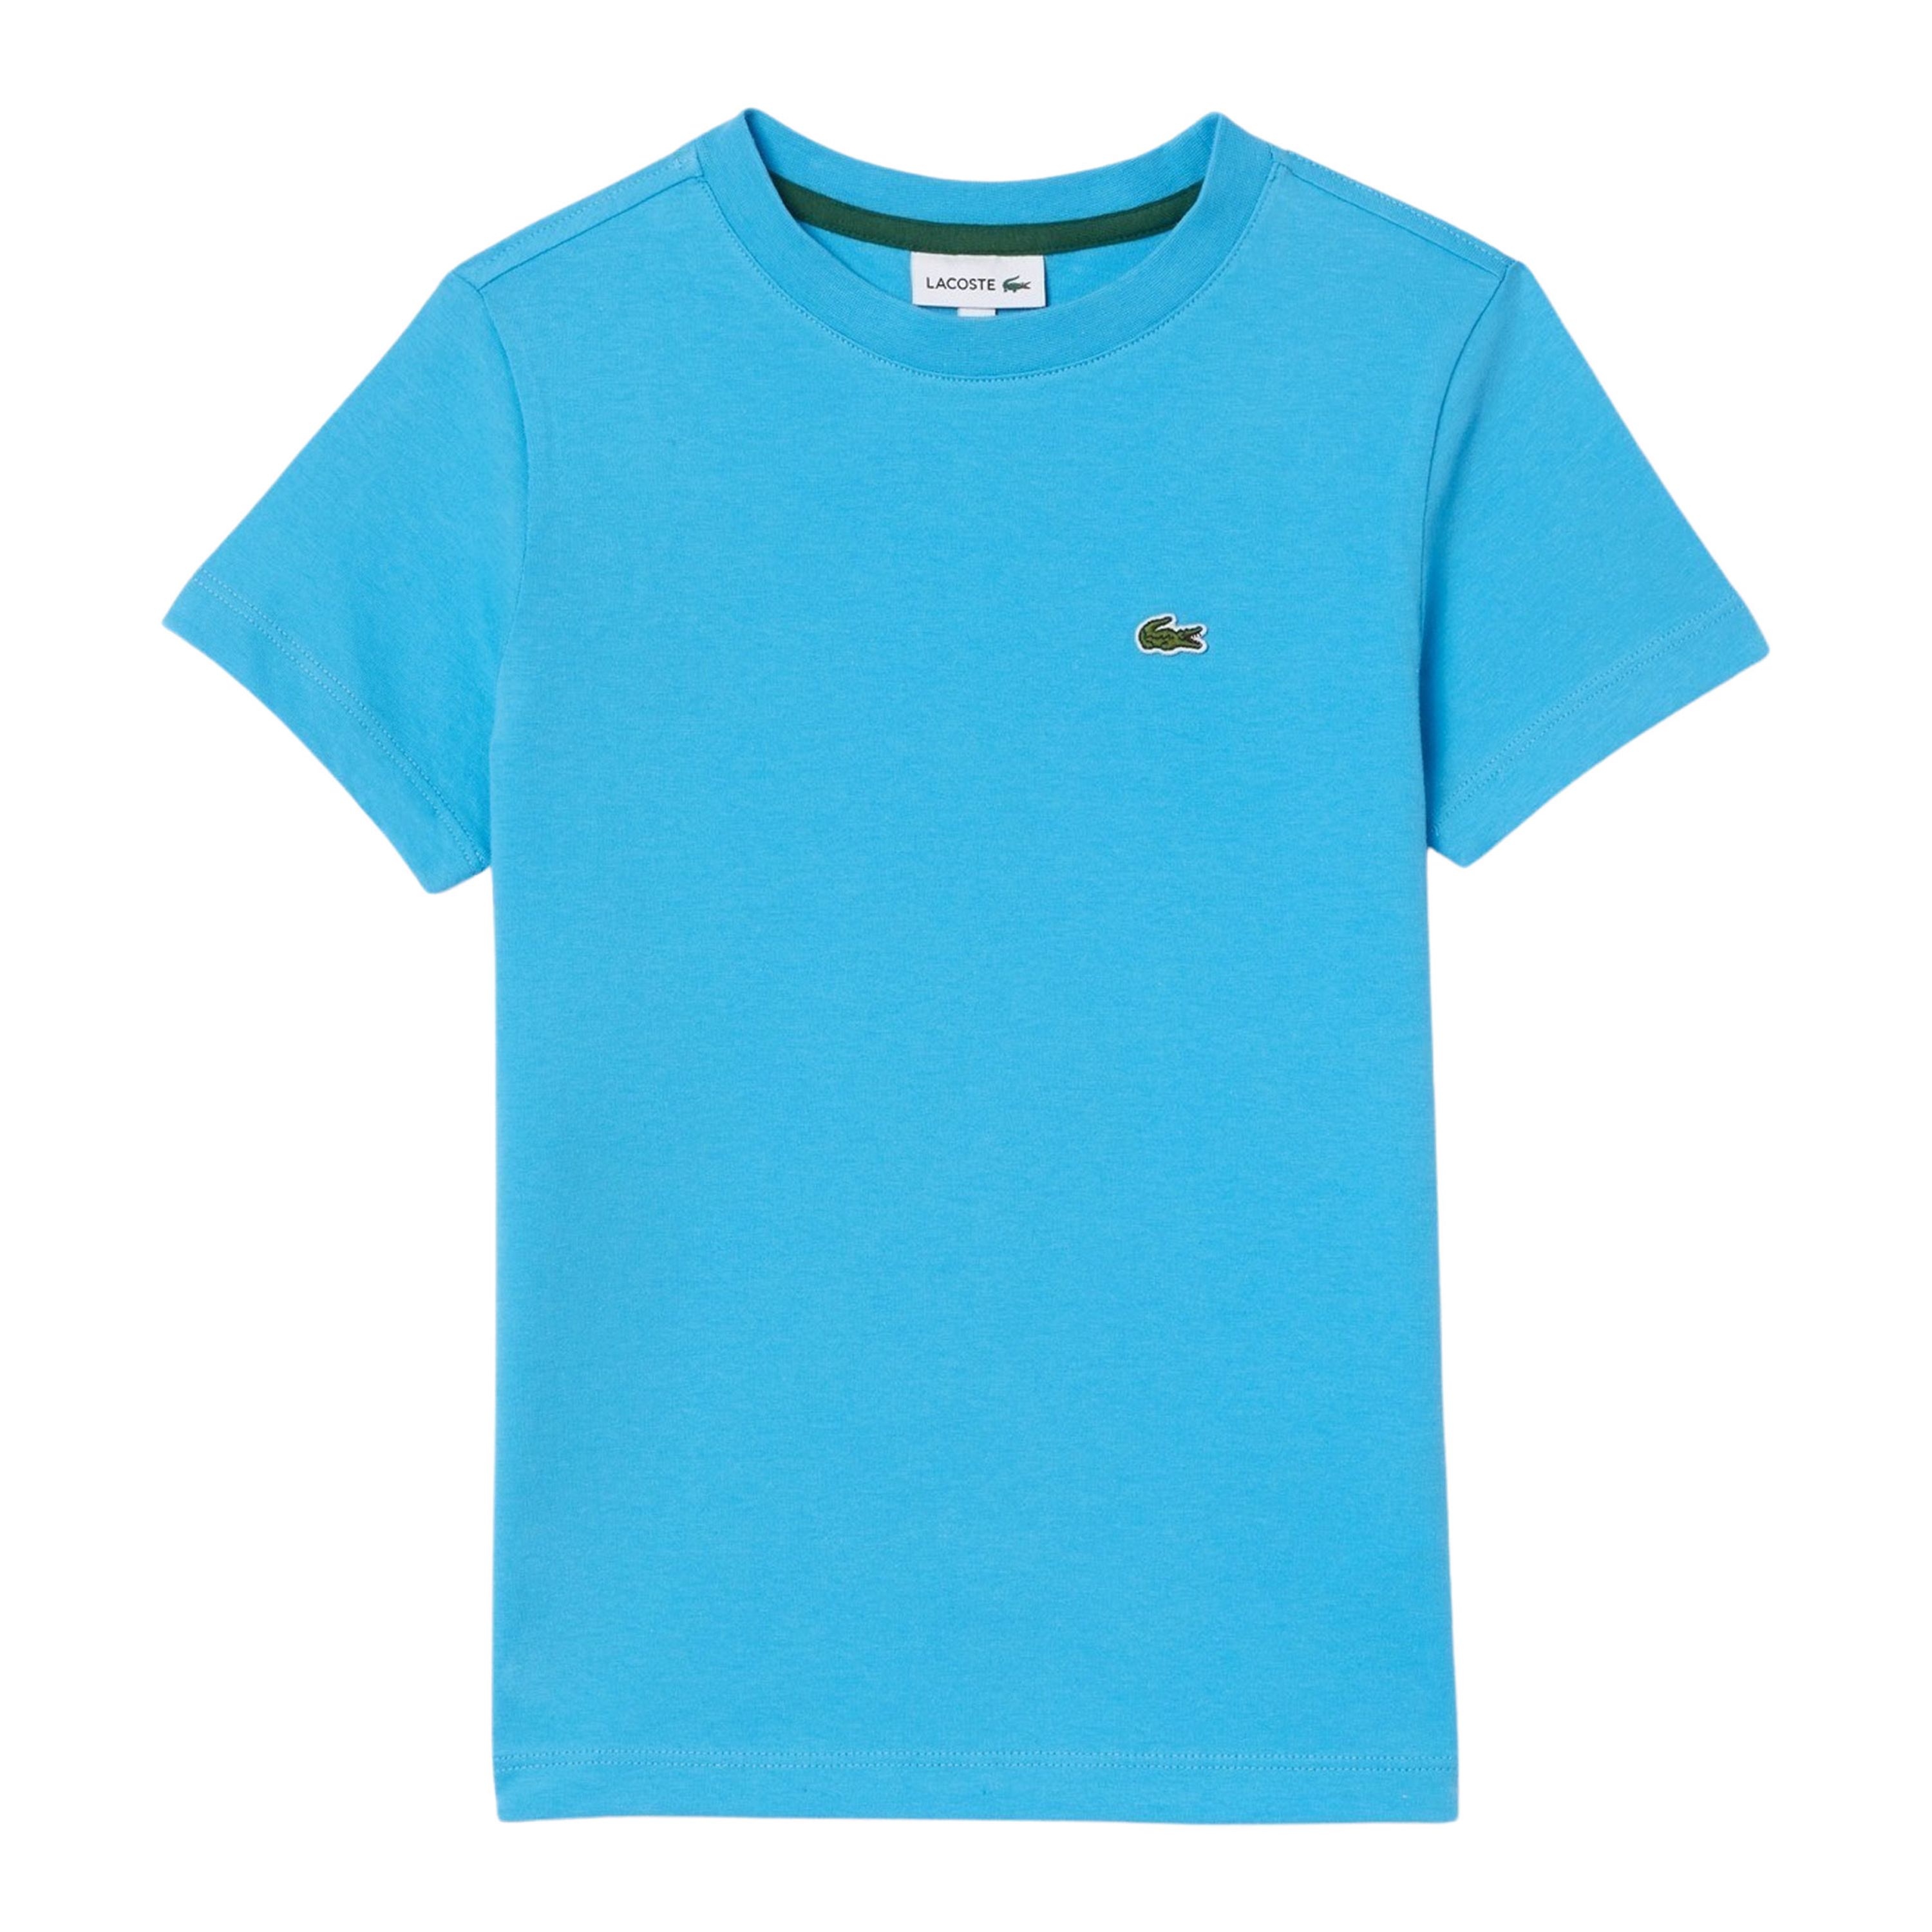 Lacoste T-shirt blauw Biologisch katoen Ronde hals Effen 128